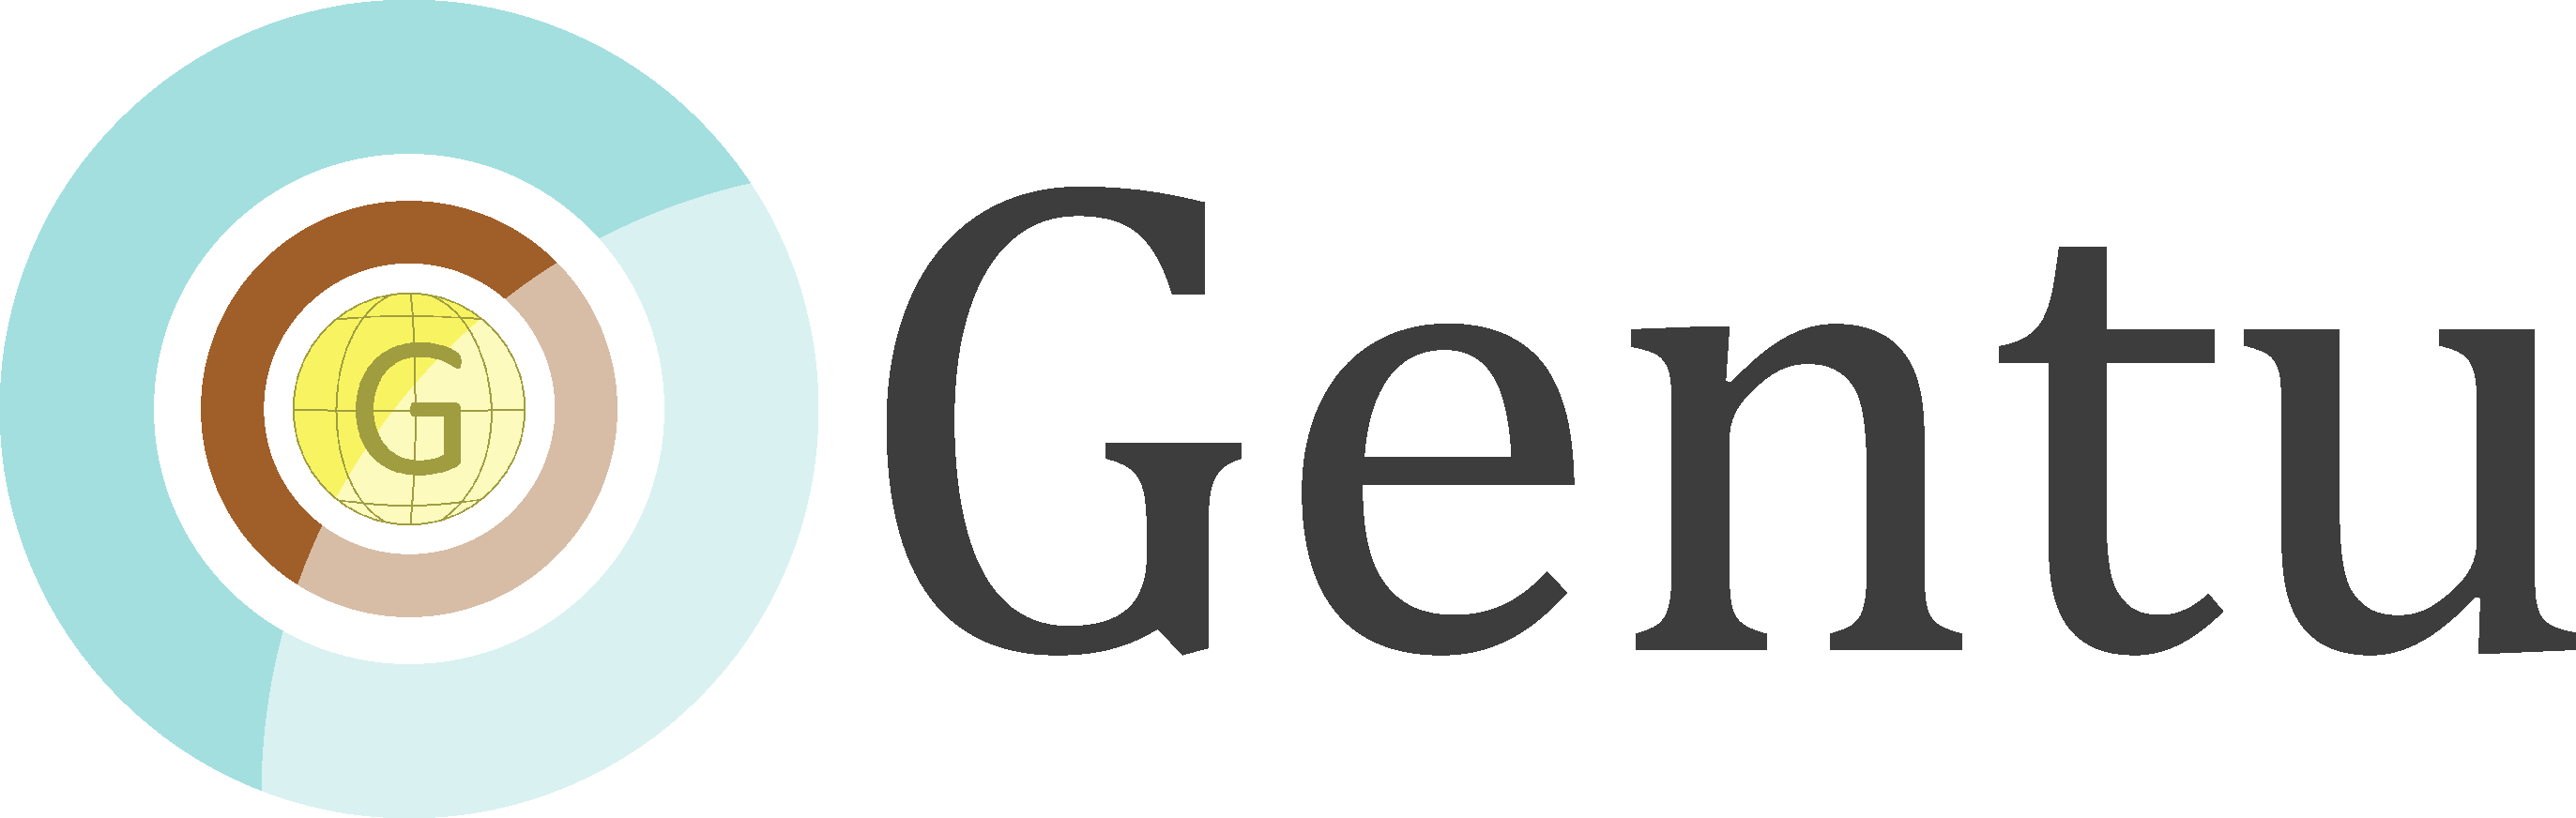 Gentu II logo.png